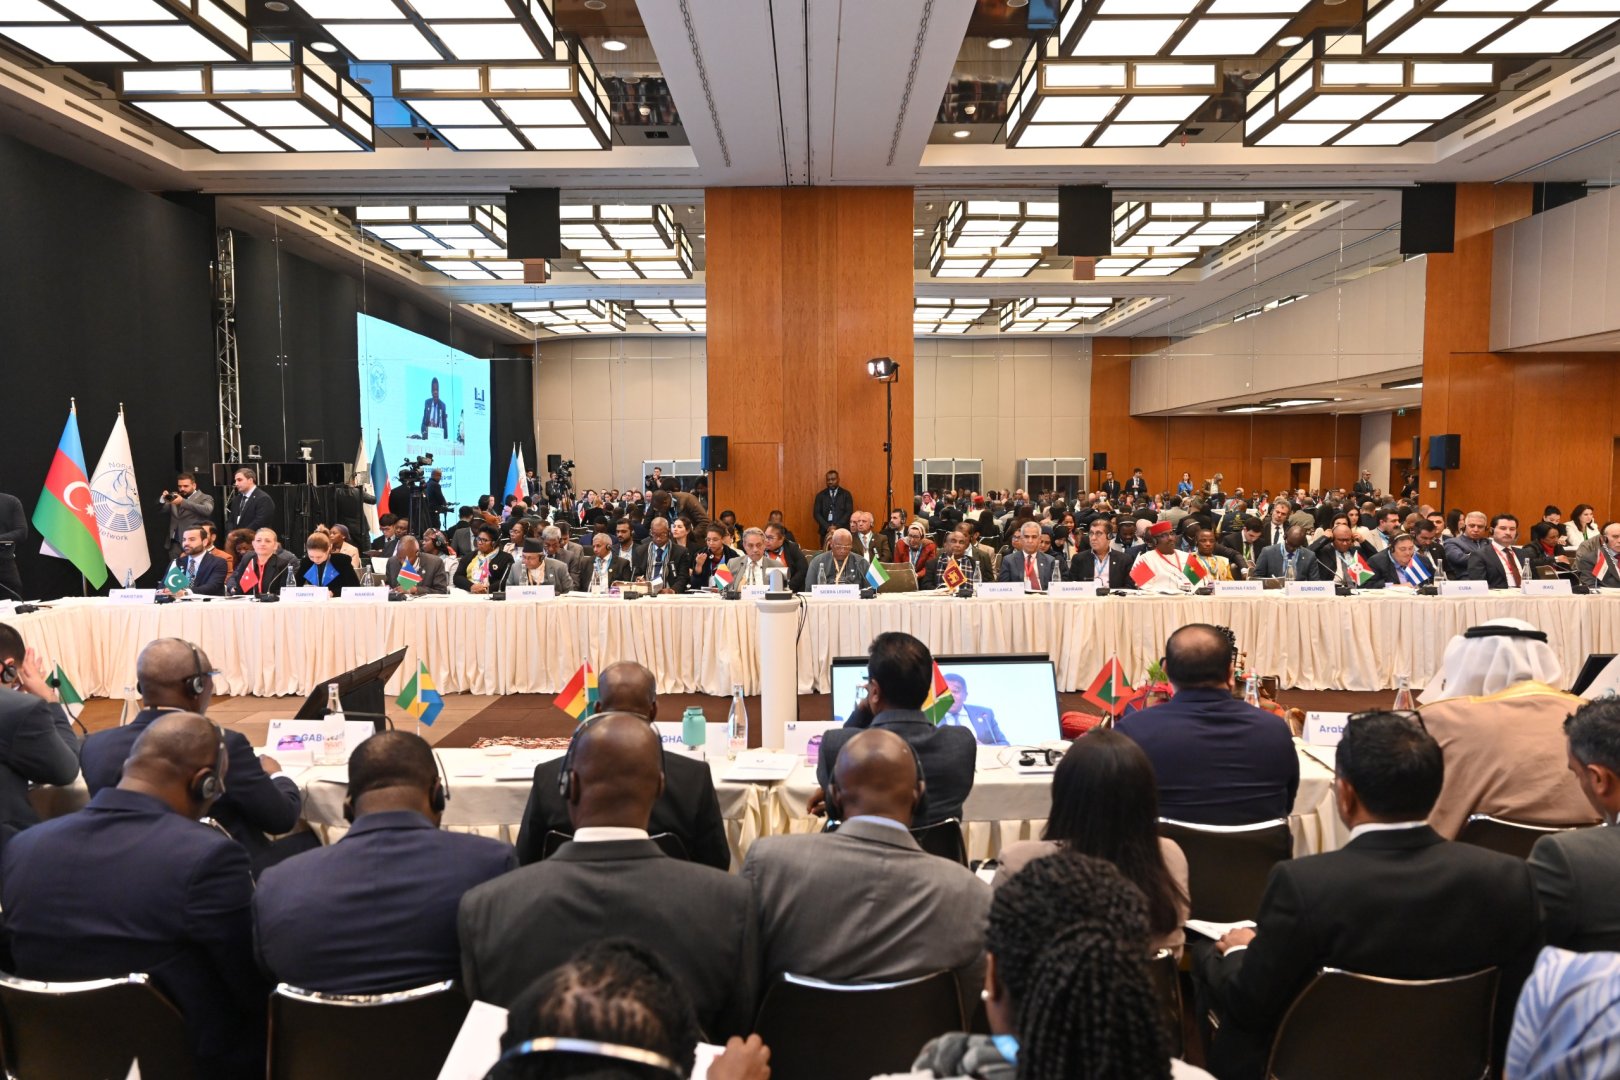 В Женеве прошла 3-я конференция Парламентской сети Движения неприсоединения (ФОТО)